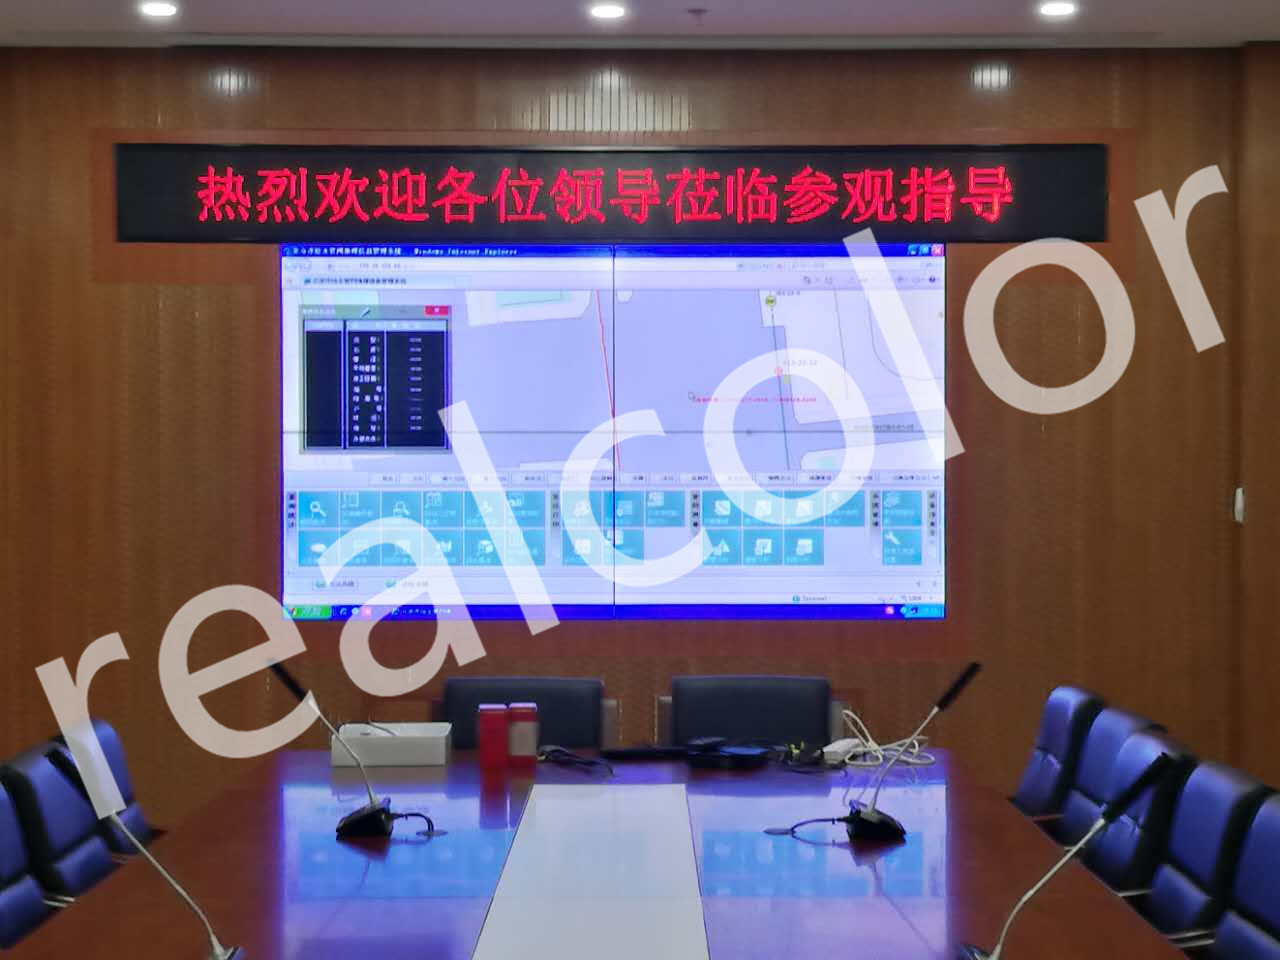 北京某会议室55寸2X2液晶拼接